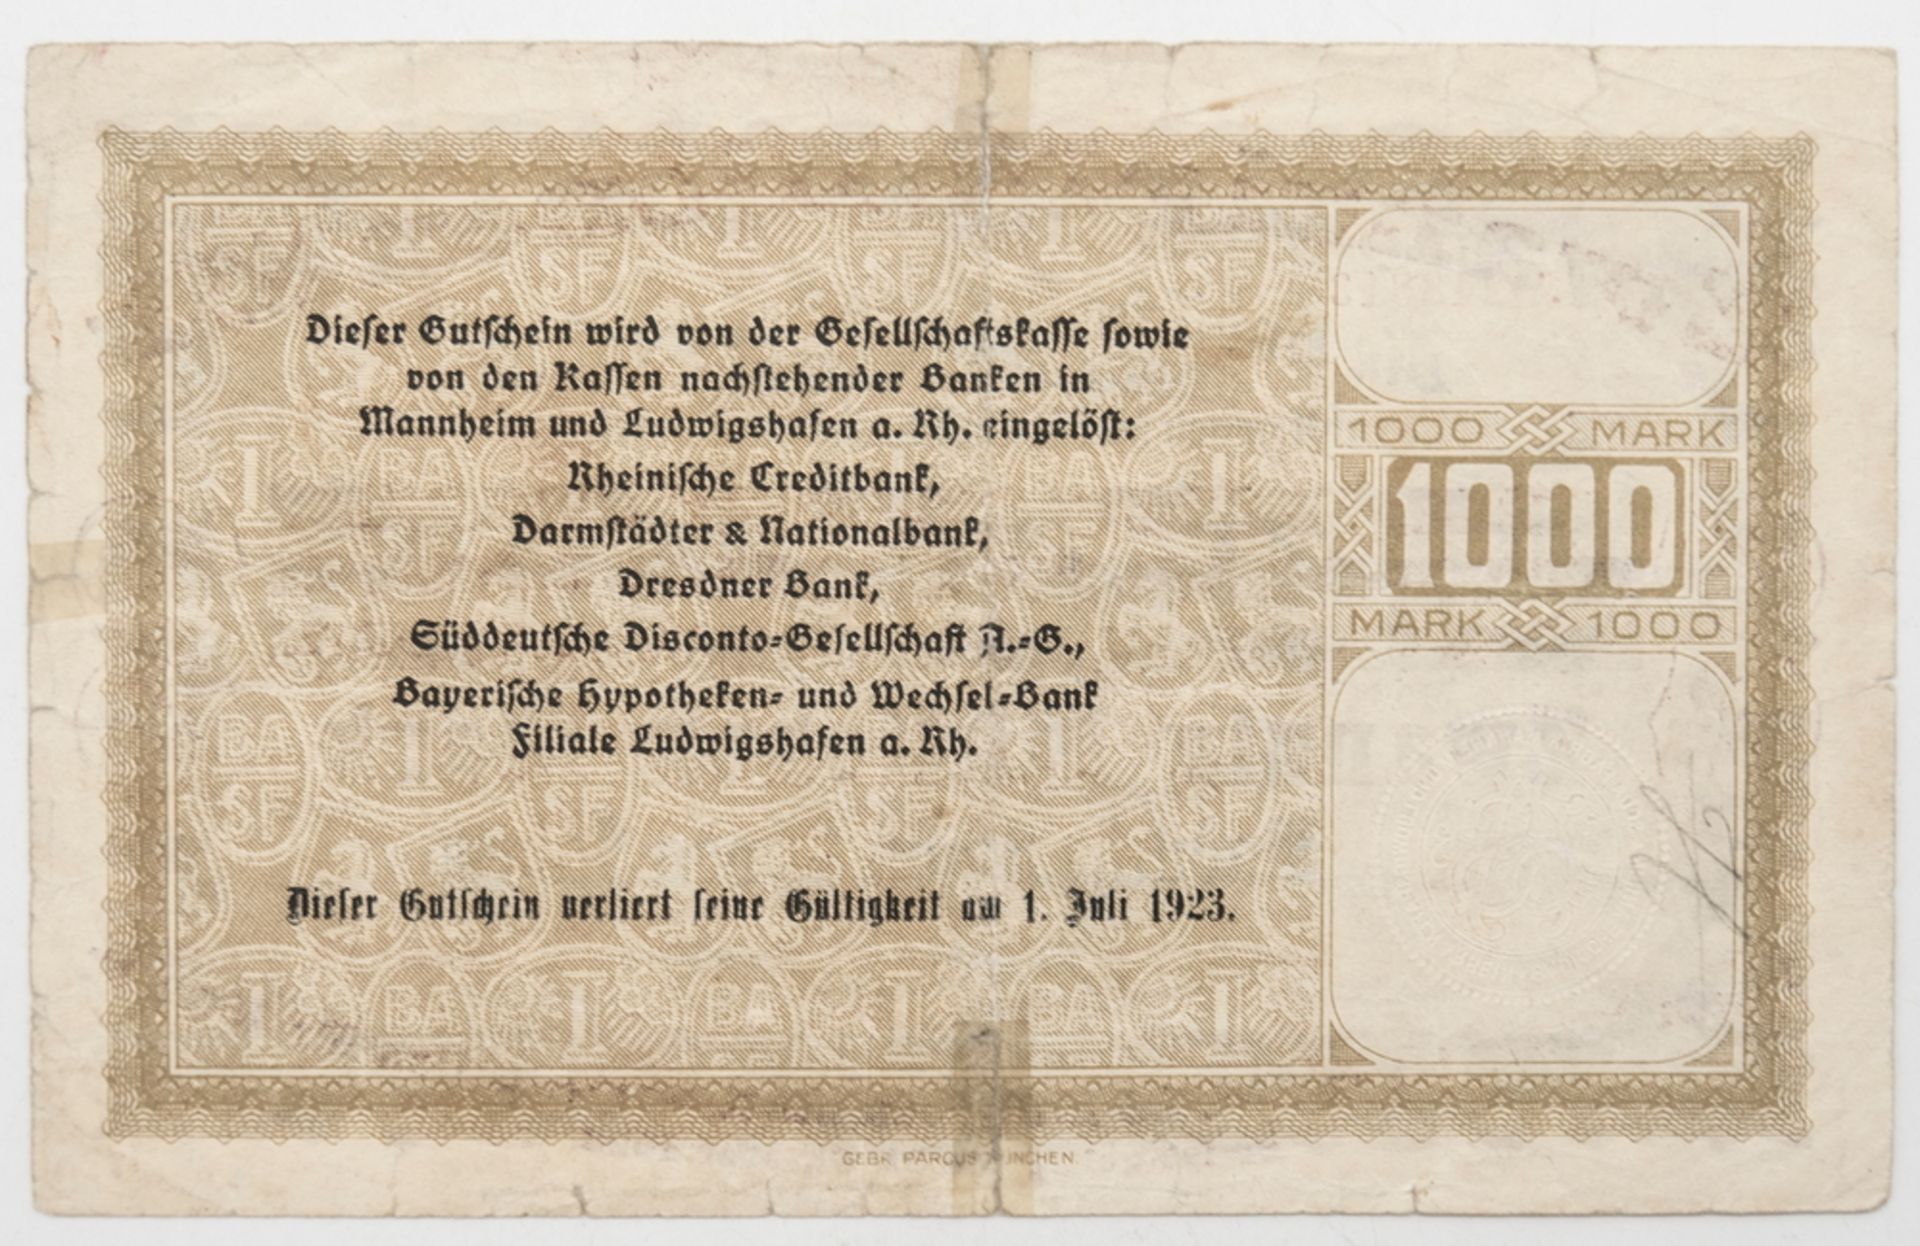 Deutschland 1922, BASF Ludwigshafen a. Rhein, Notgeld 20 Millionen Mark. Erhaltung: ss. - Image 2 of 2